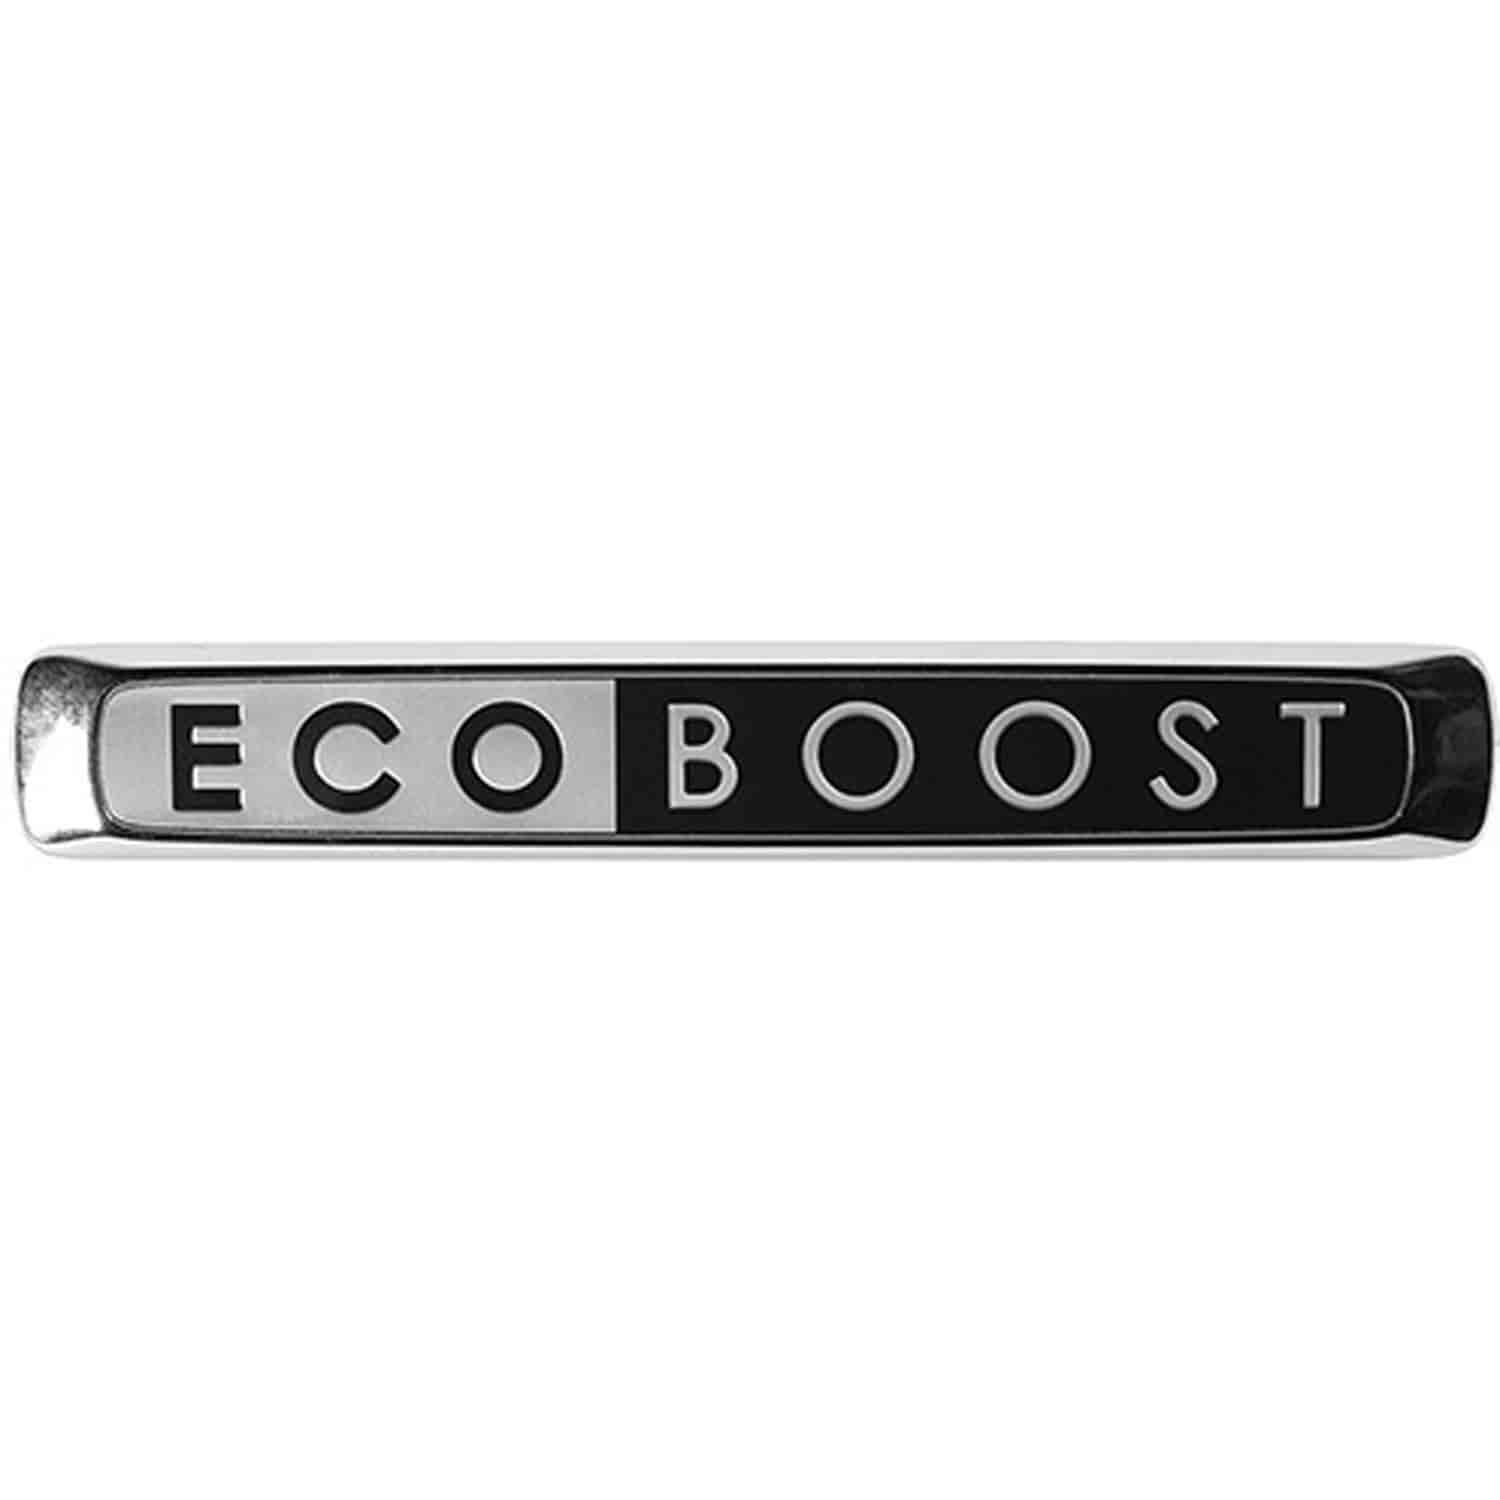 EcoBoost Fender Badges Black/Chrome